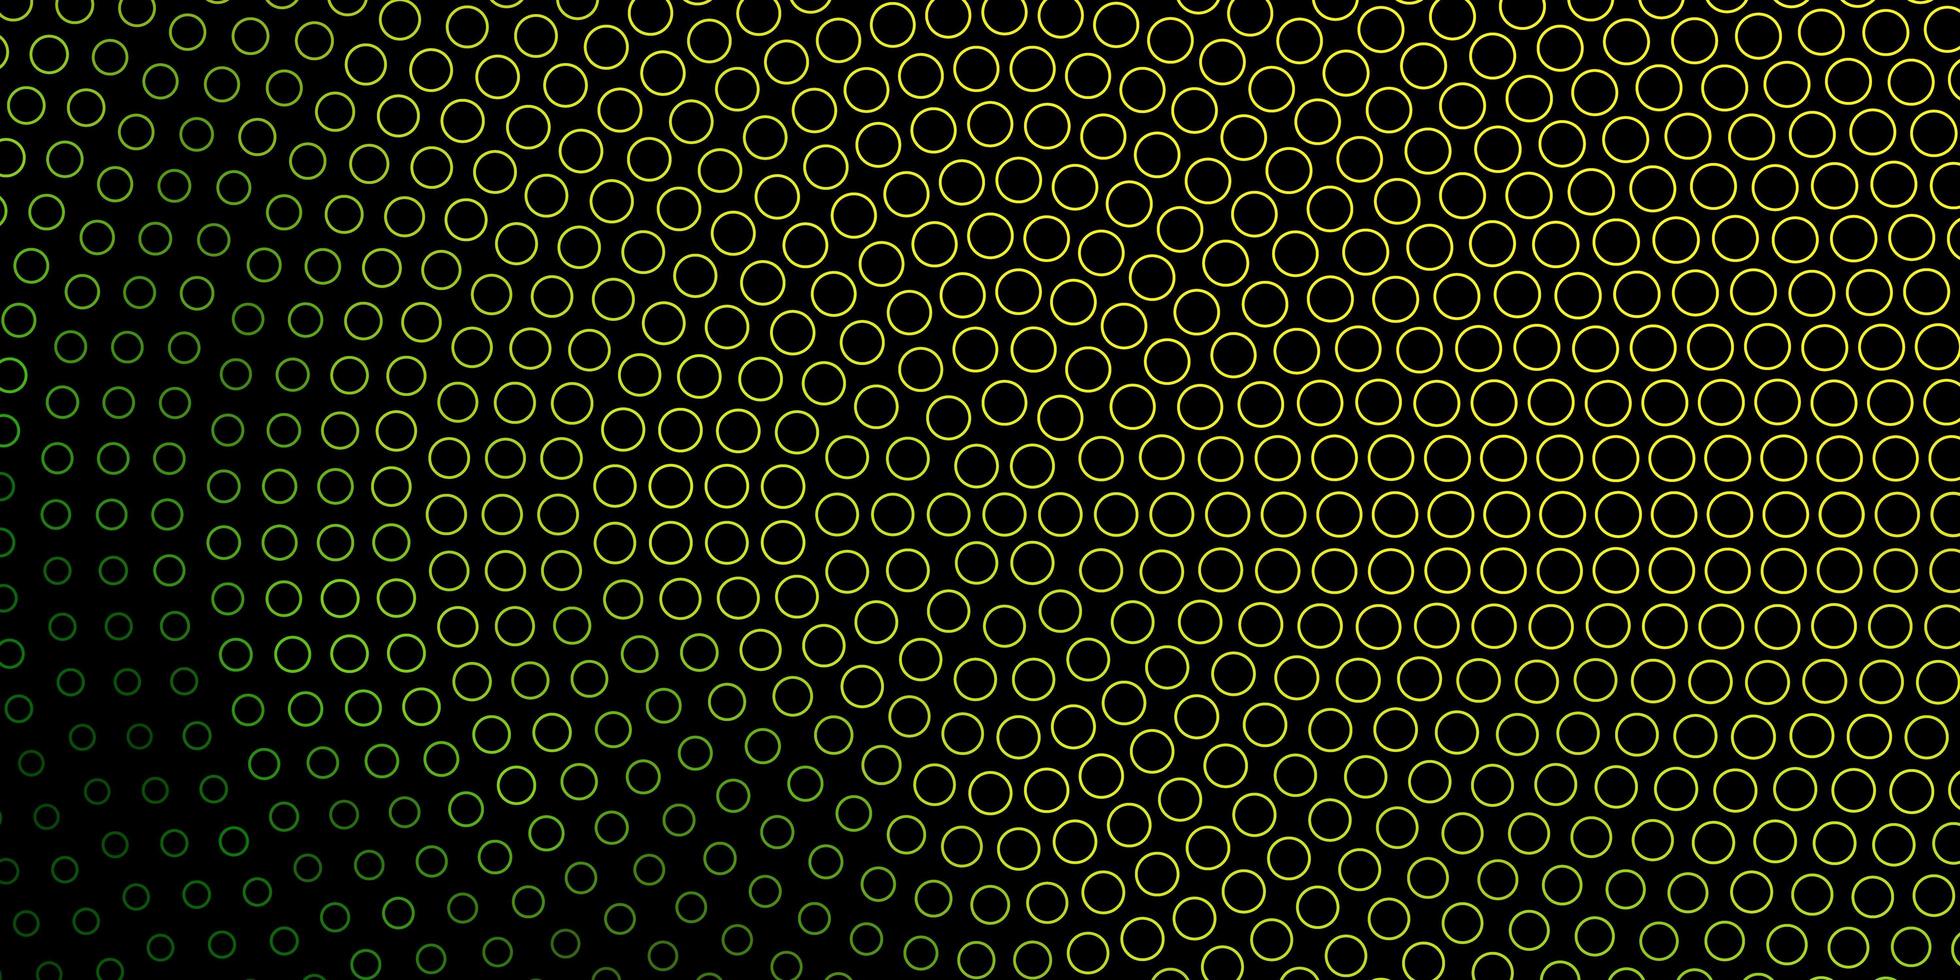 mörkgrönt, gult vektormönster med cirklar. vektor